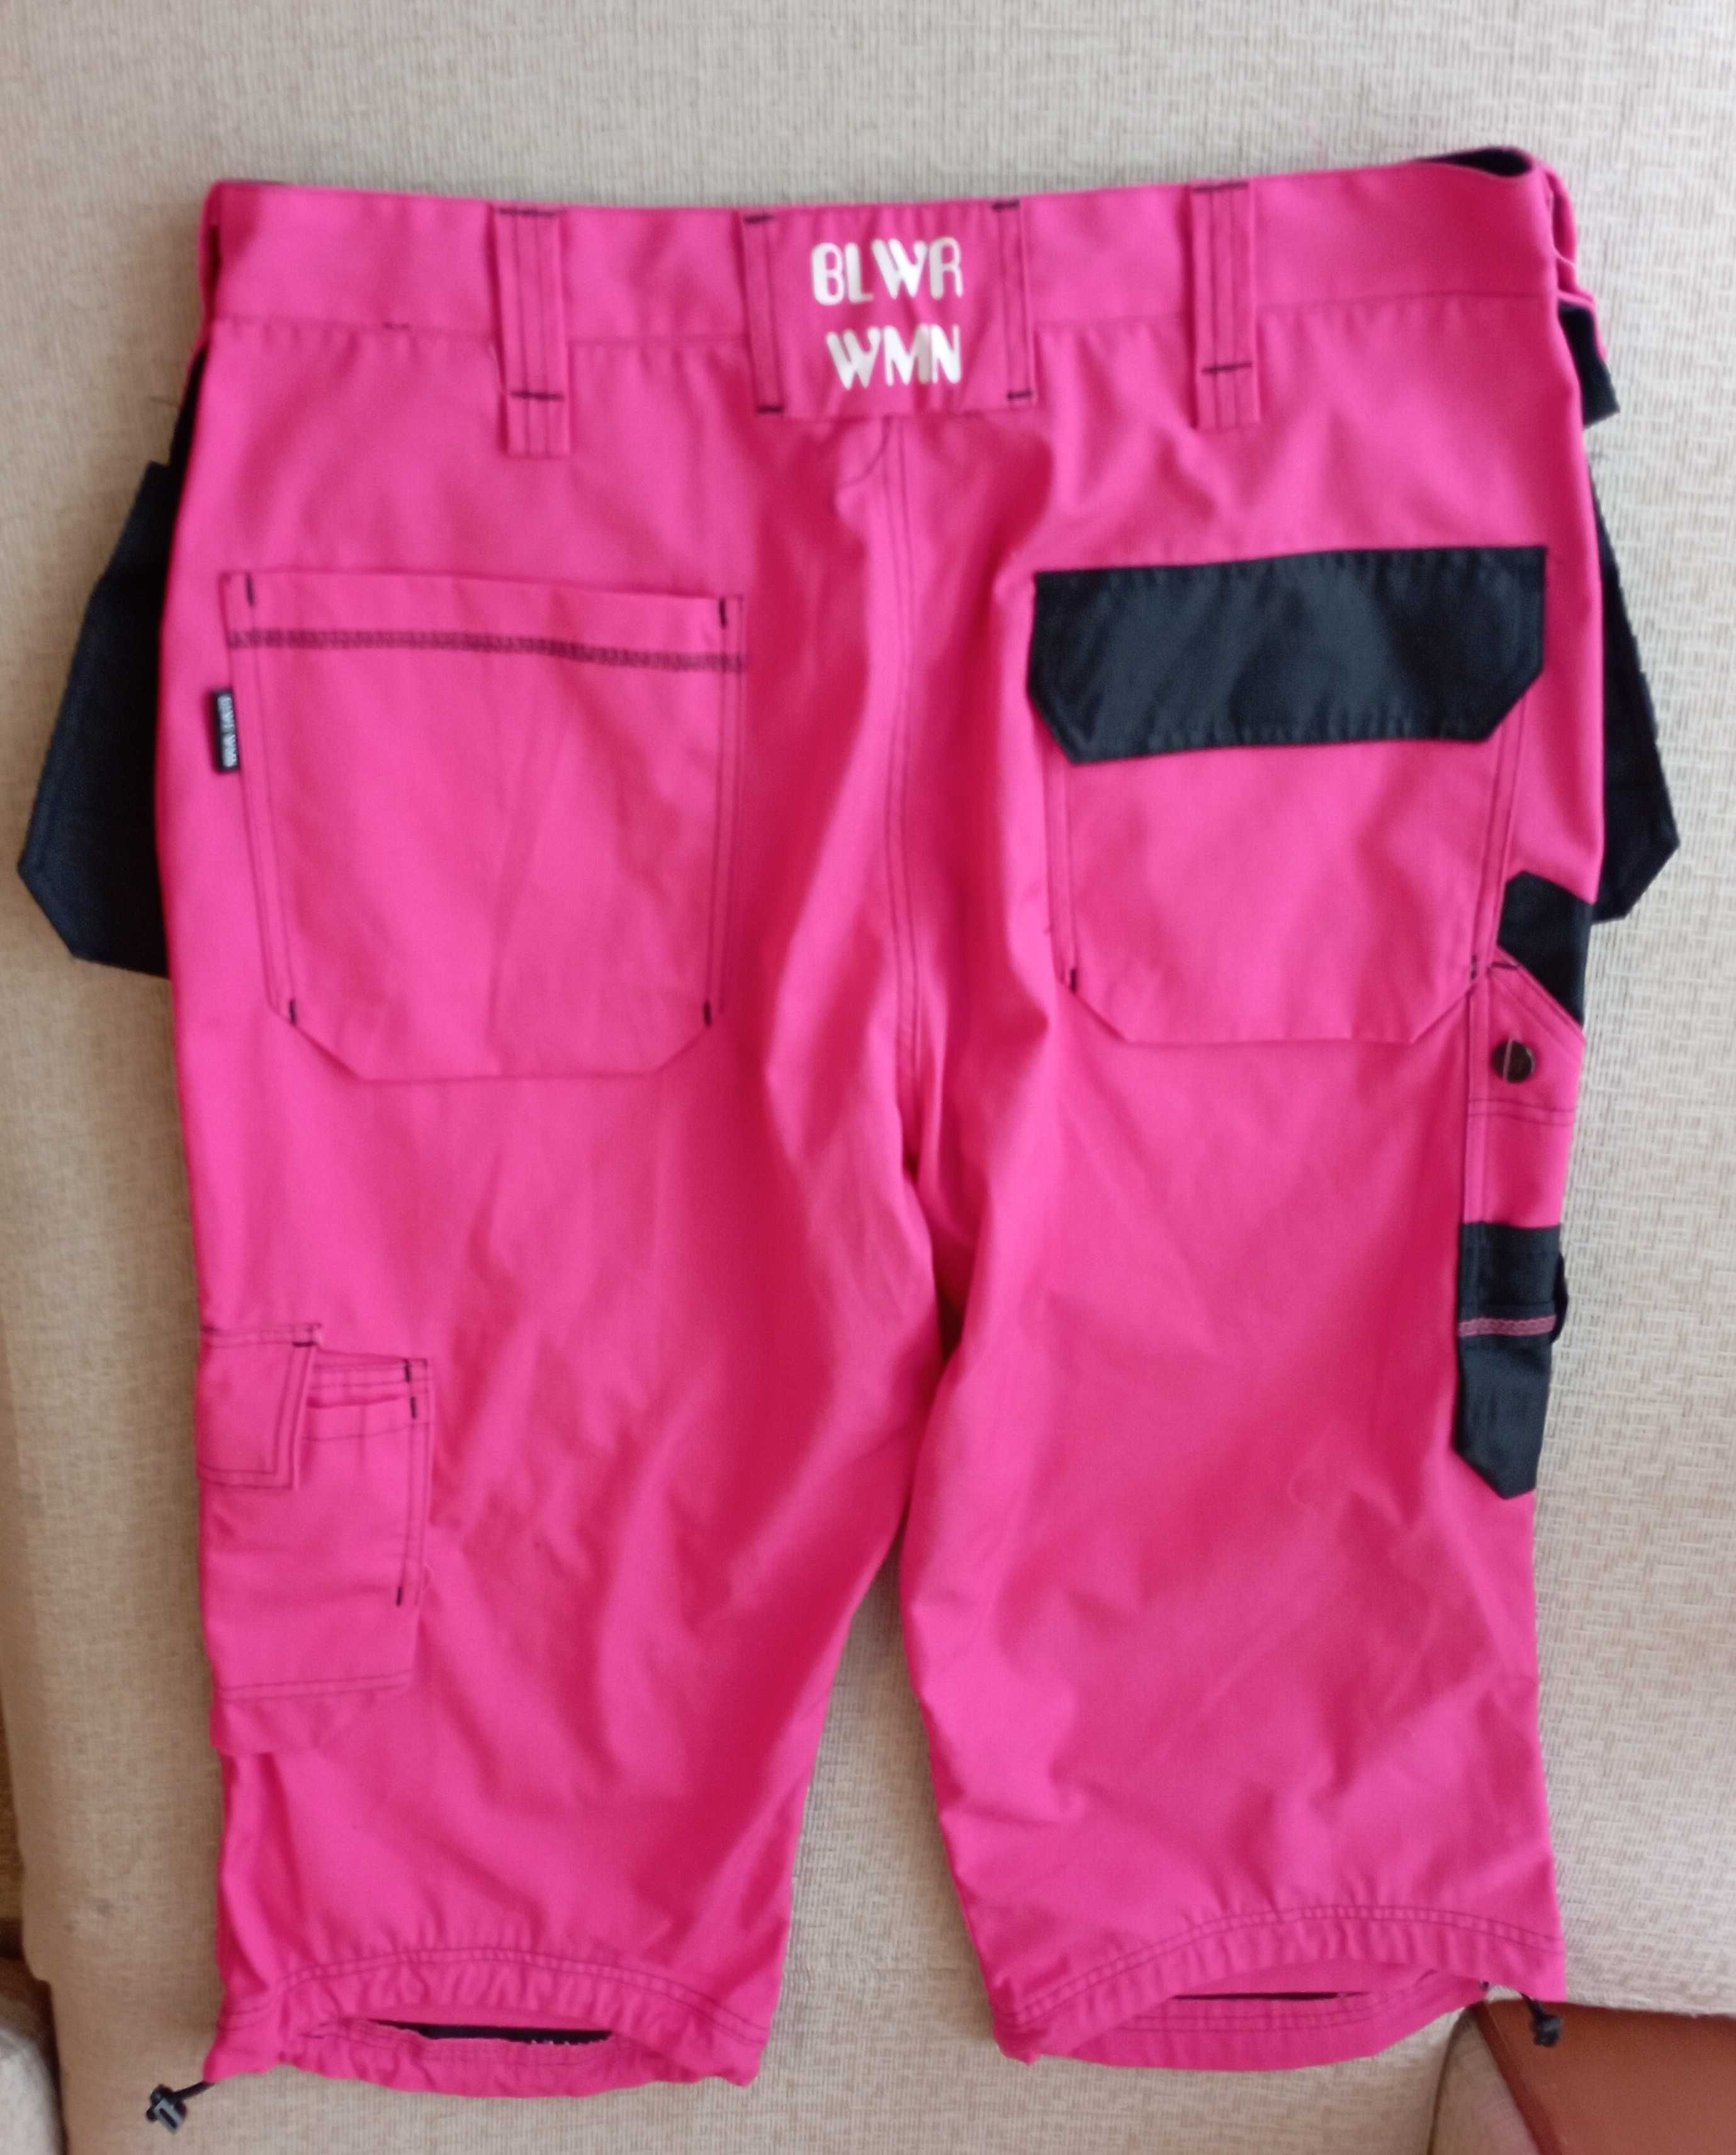 Дамски работни панталони 3/4 BLWR WMN, №44